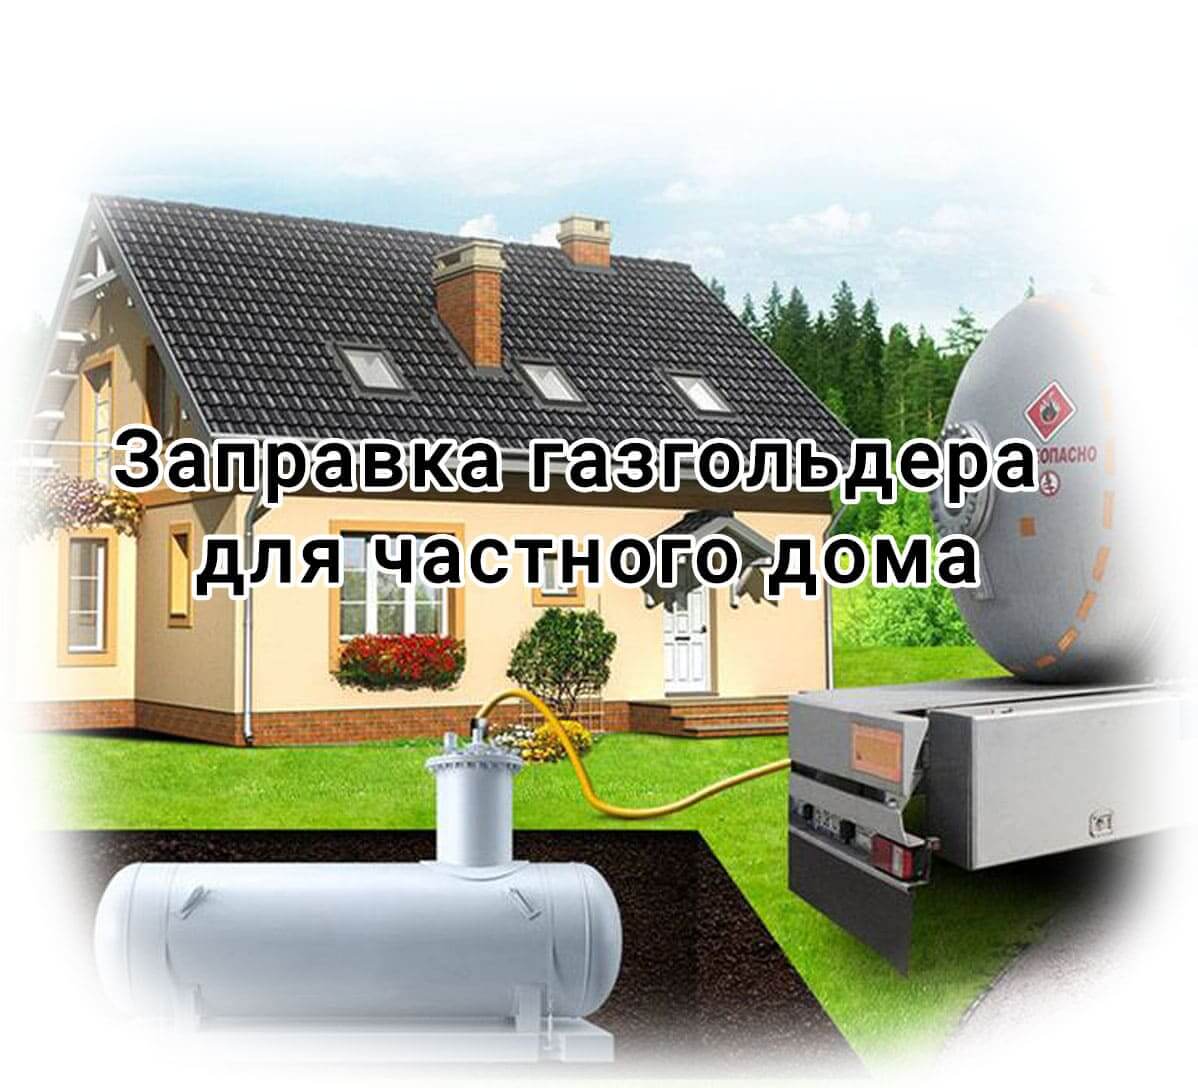 Заправка газгольдера для частного дома